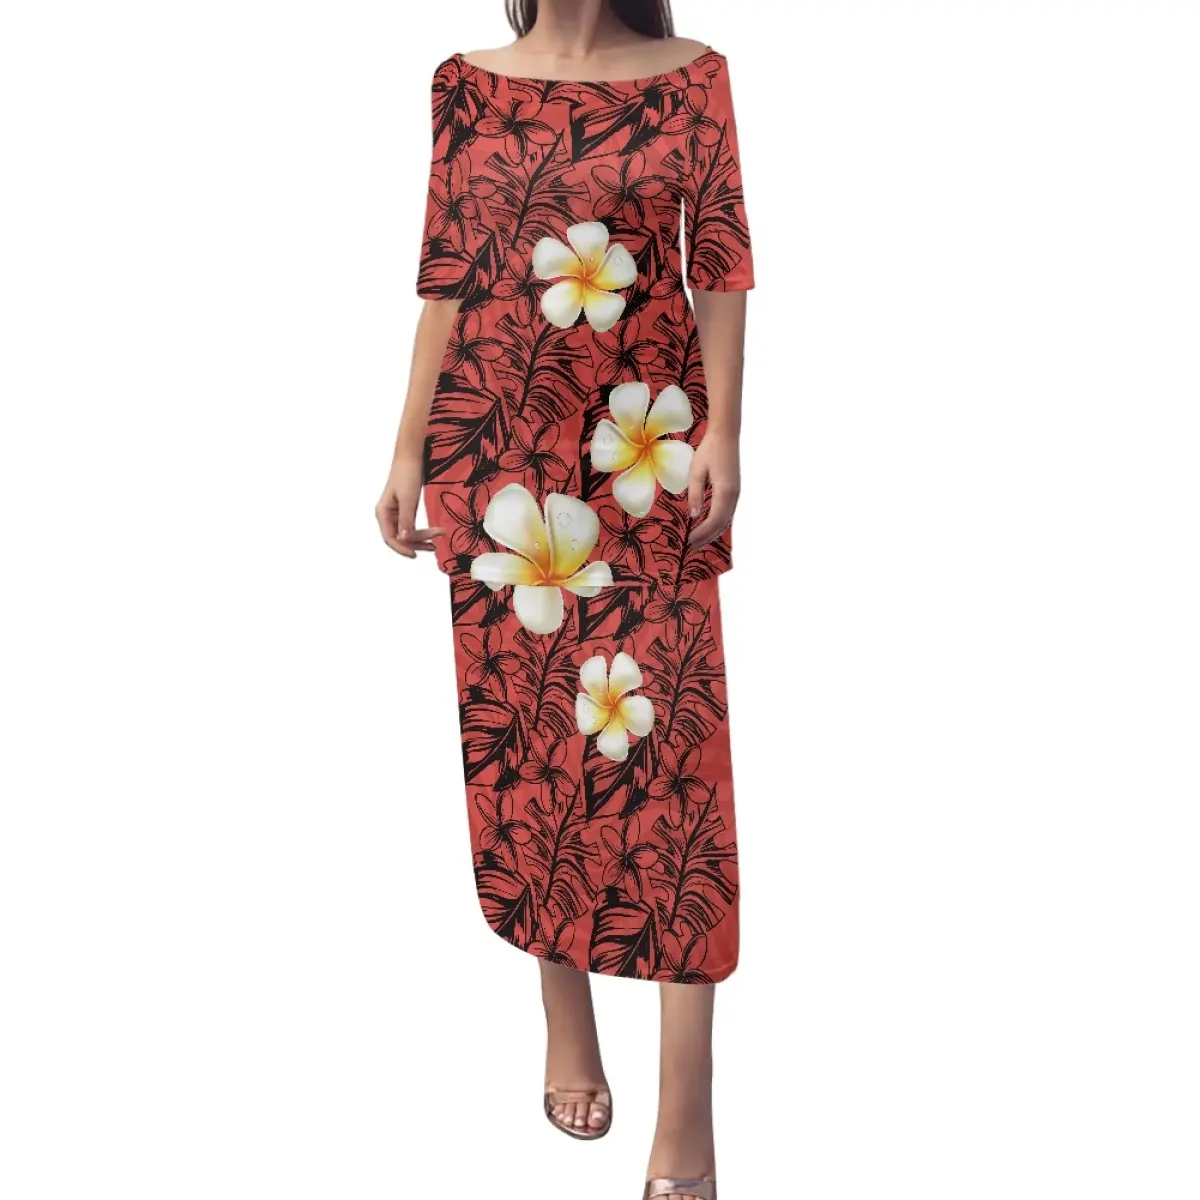 Samoan Puletasi Kleidung Polynesian Hibiscus Flower Designer Island Weibliches Kleid Günstige Großhandel Elegant Off Shoulder Kleid Hot